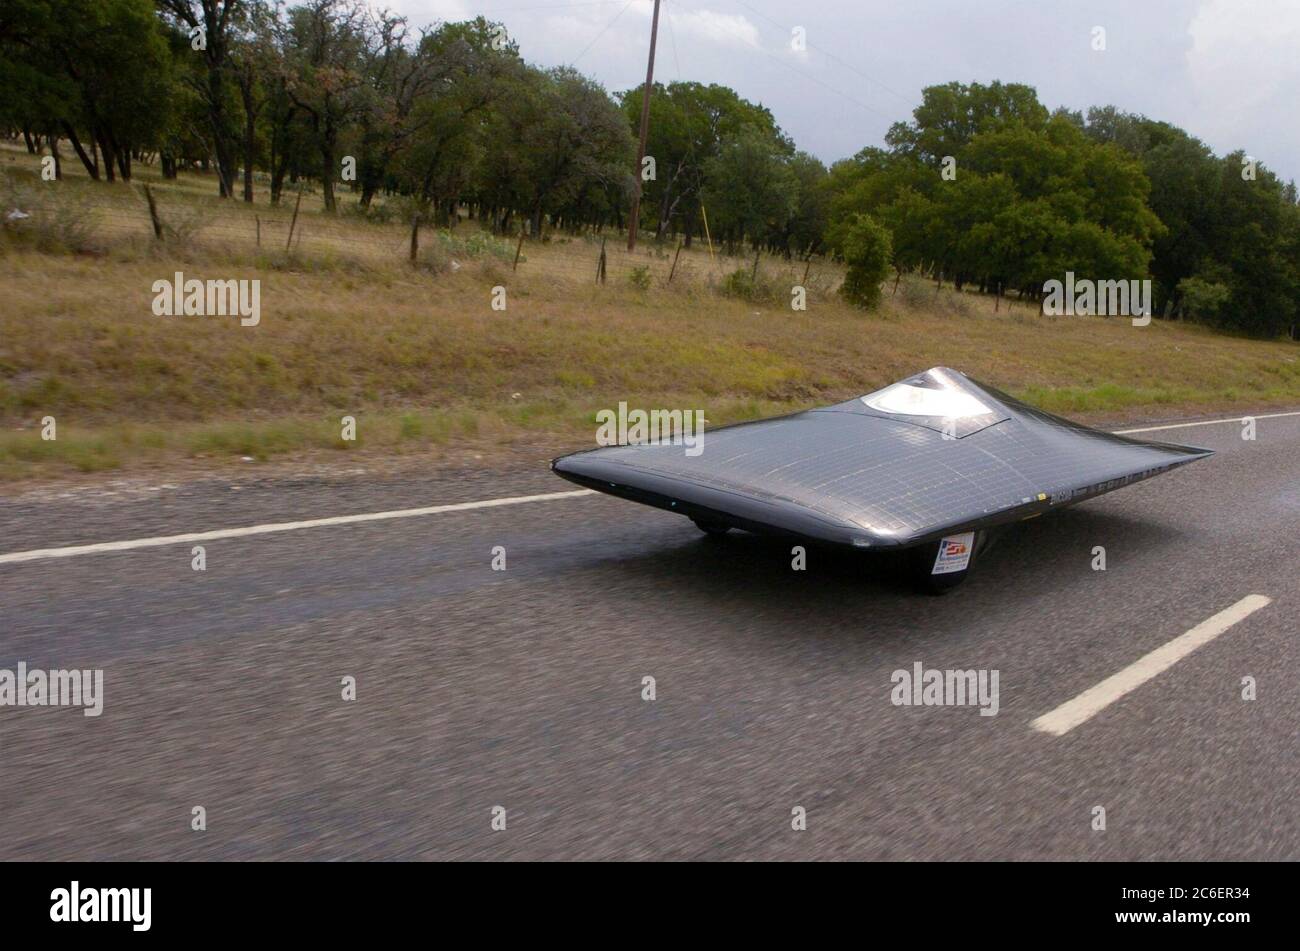 En images : essai Sono Sion, voiture électrique solaire - Challenges